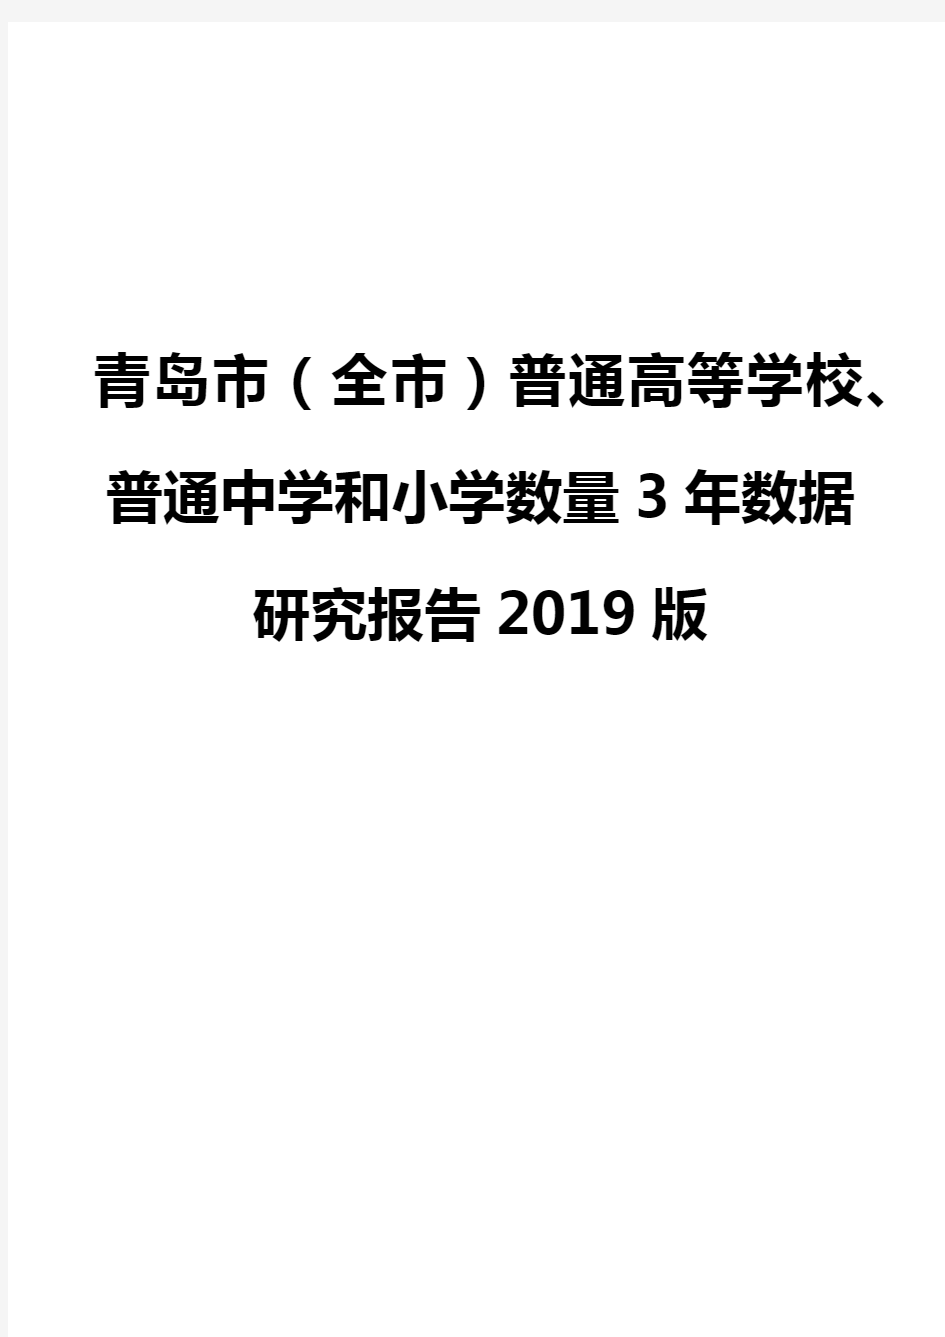 青岛市(全市)普通高等学校、普通中学和小学数量3年数据研究报告2019版